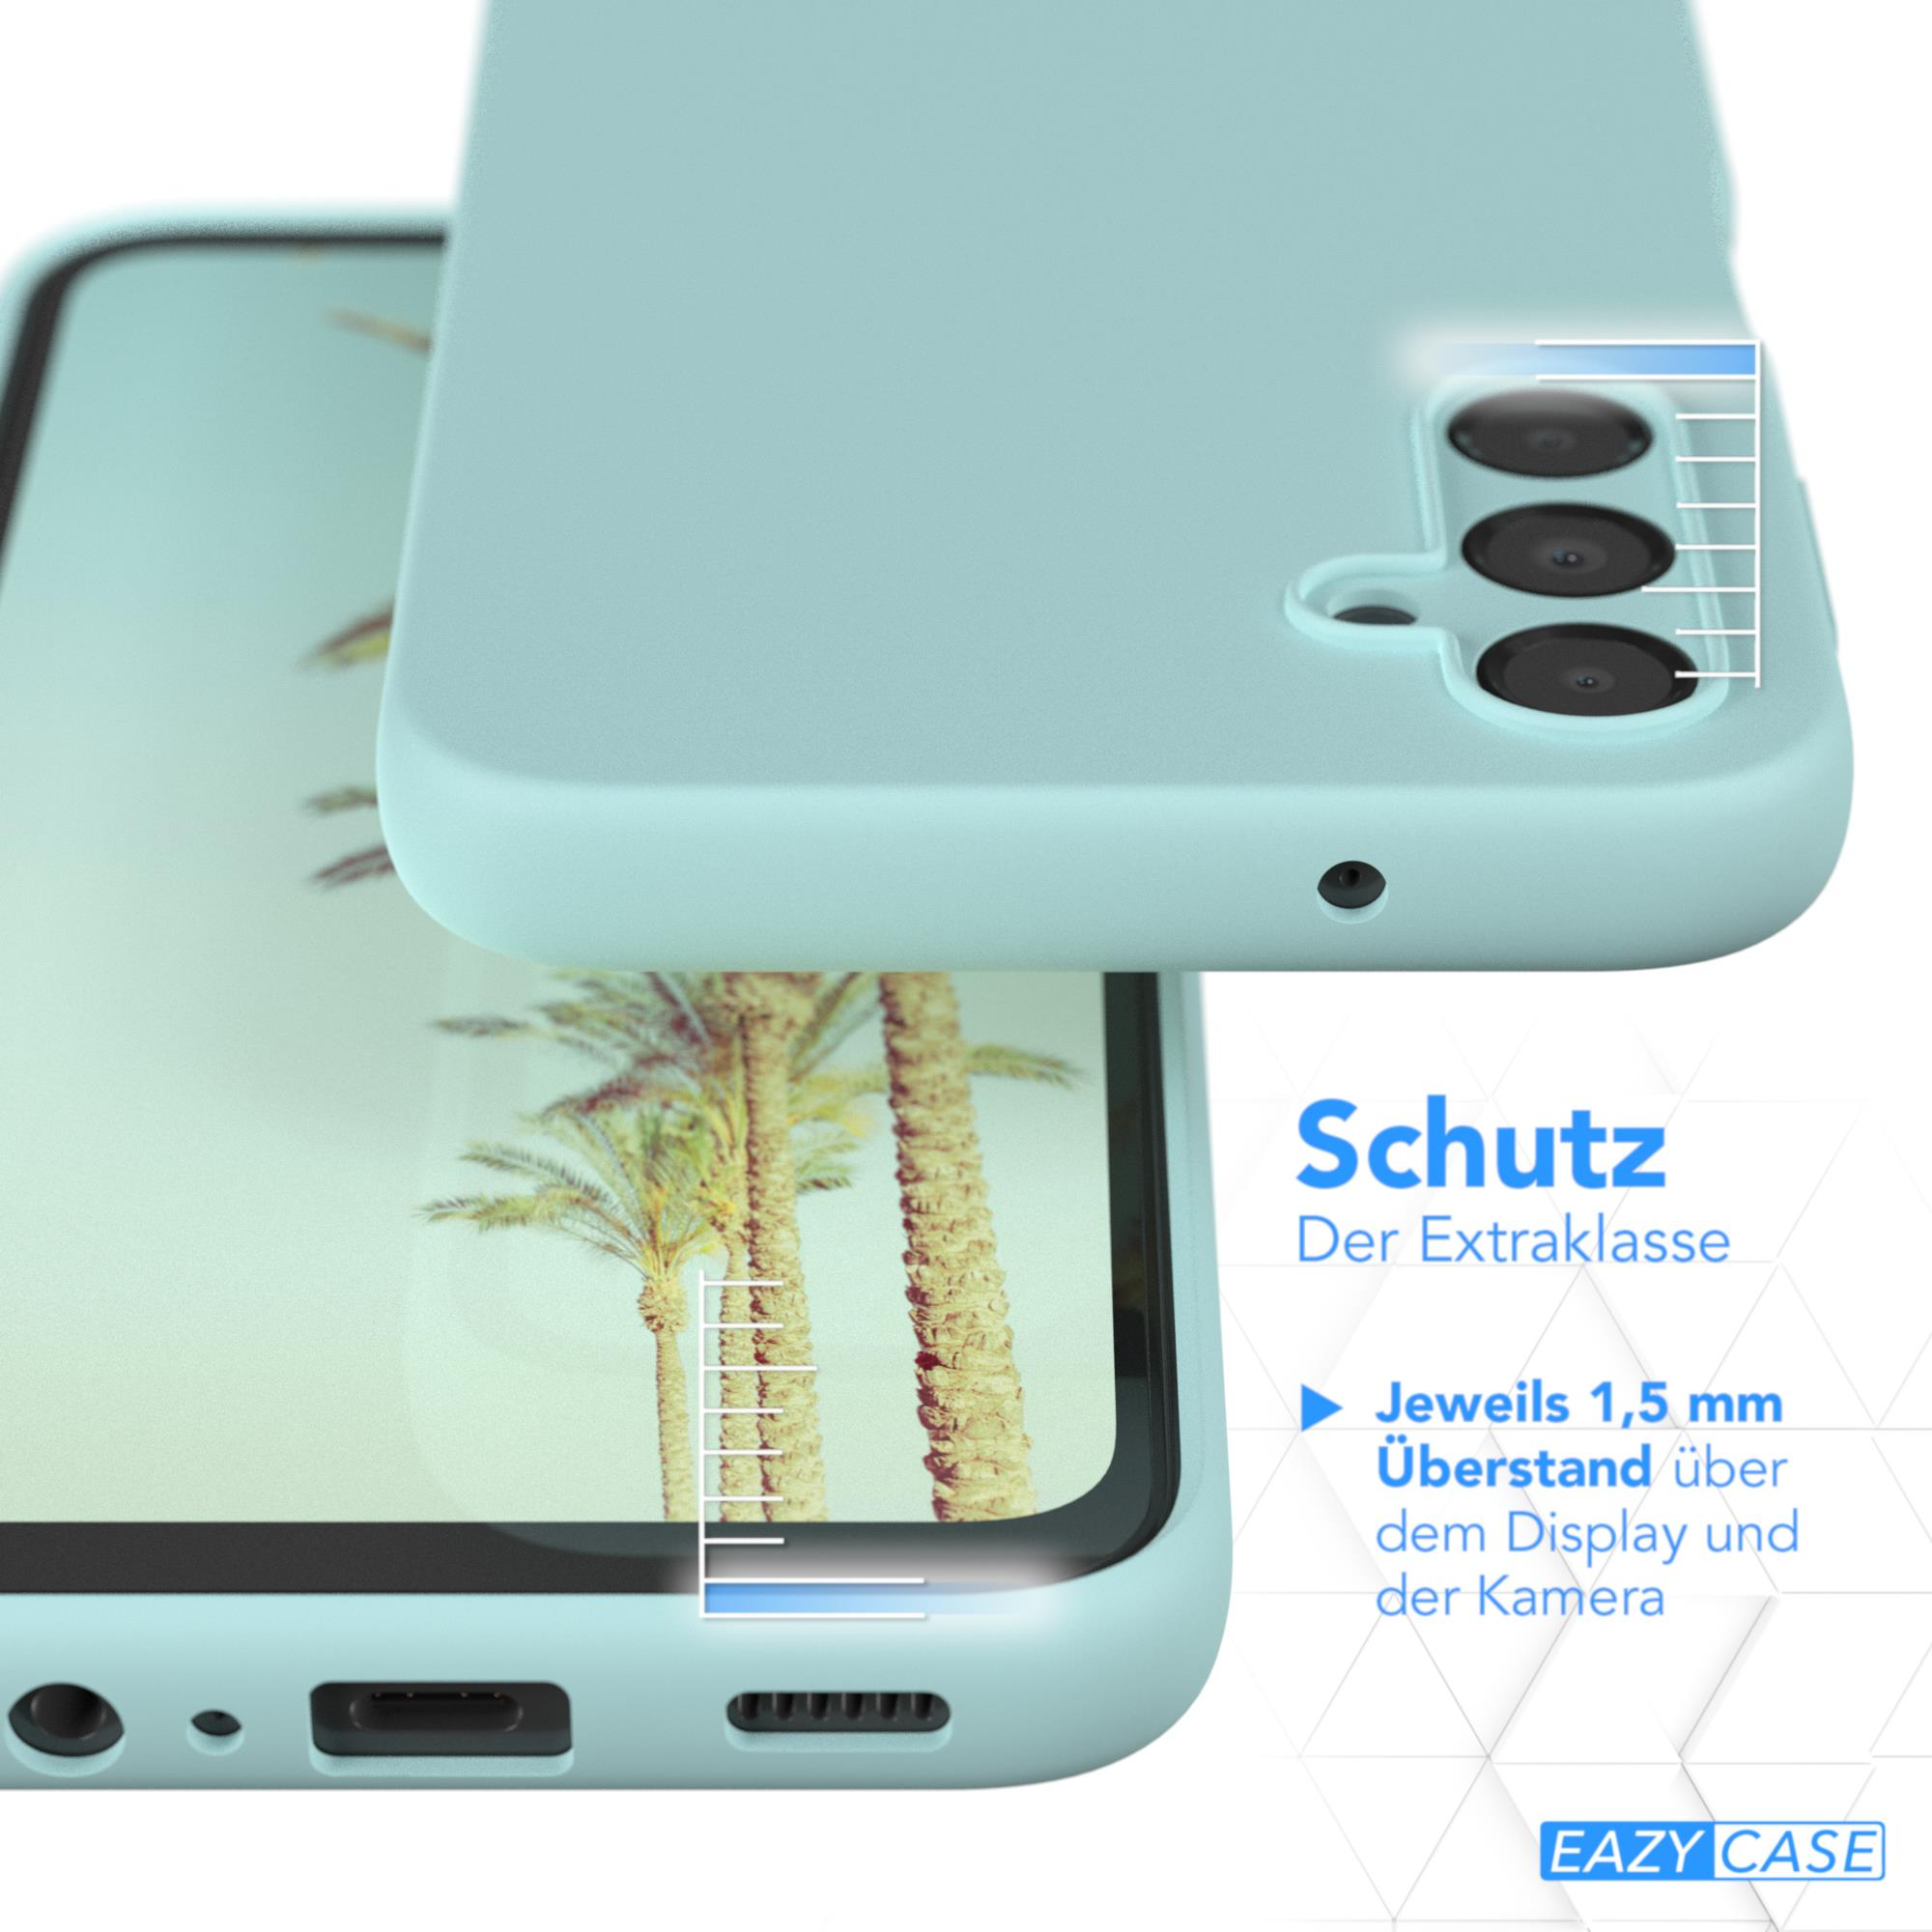 EAZY CASE Premium Silikon Grün 5G, A14 Samsung, Galaxy Backcover, Mint Handycase